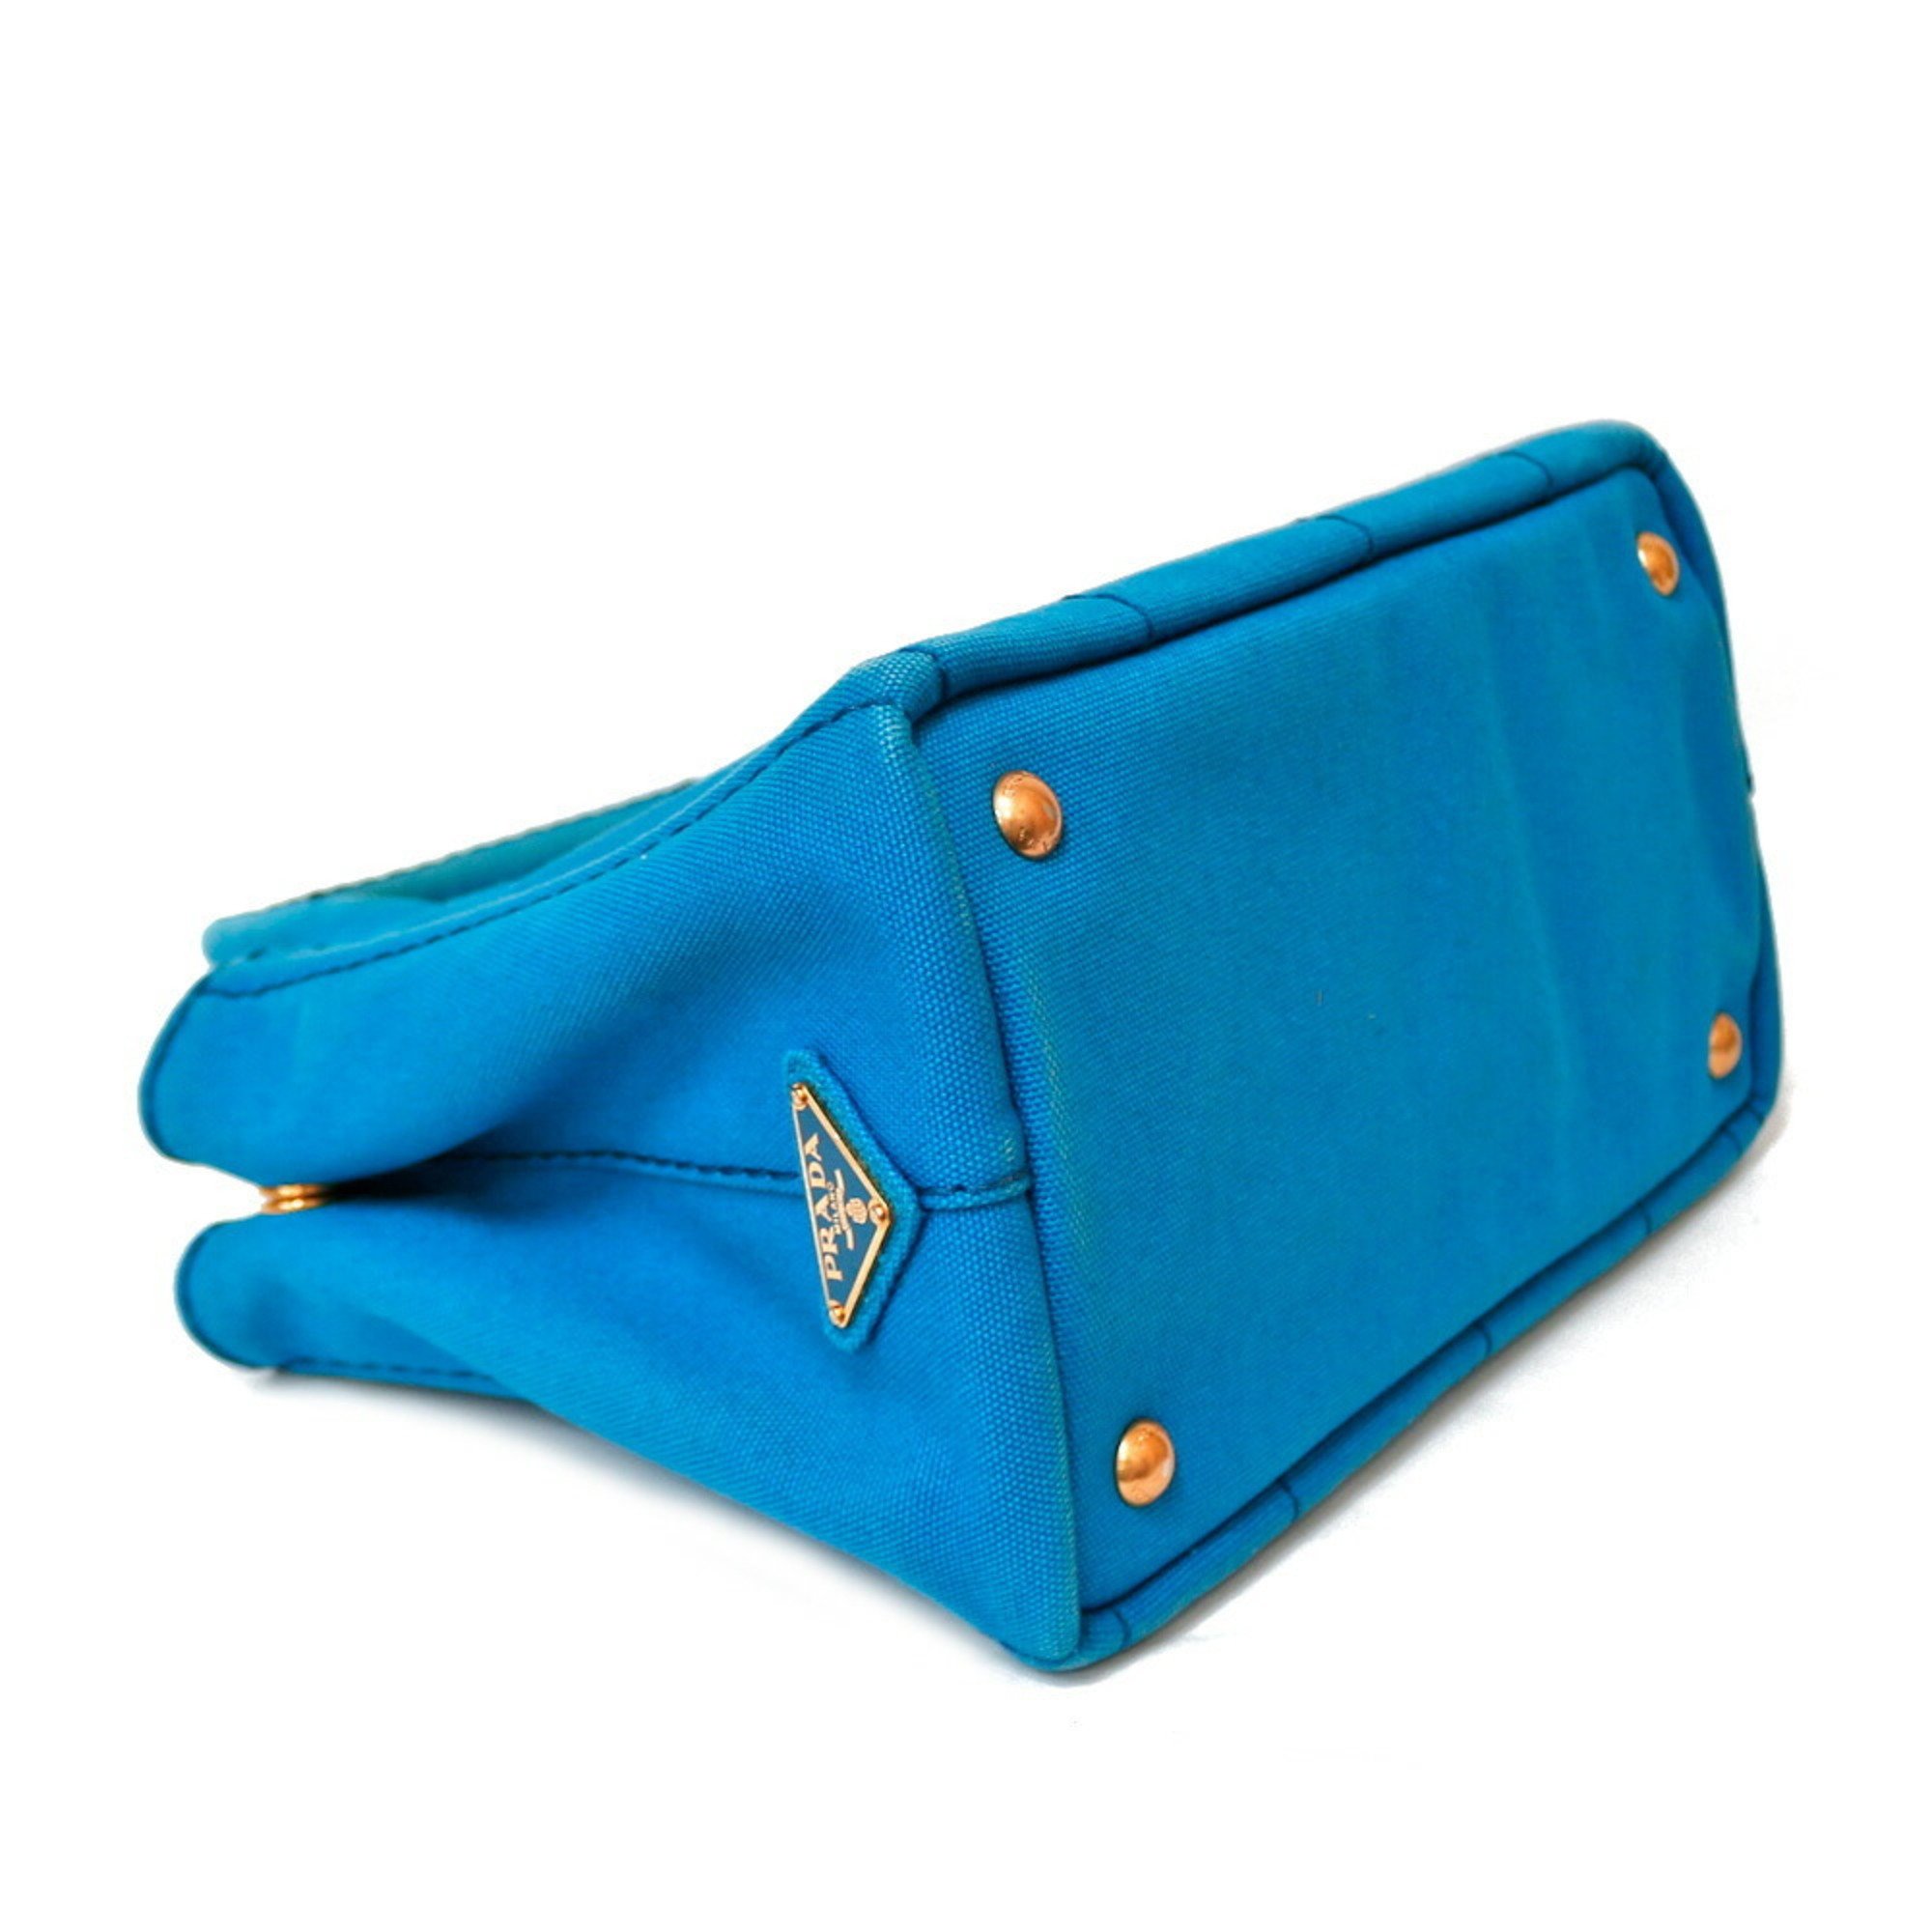 Prada Canapa Tote PM Bag Canvas Blue Ladies PRADA Handbag BRB01000000002493